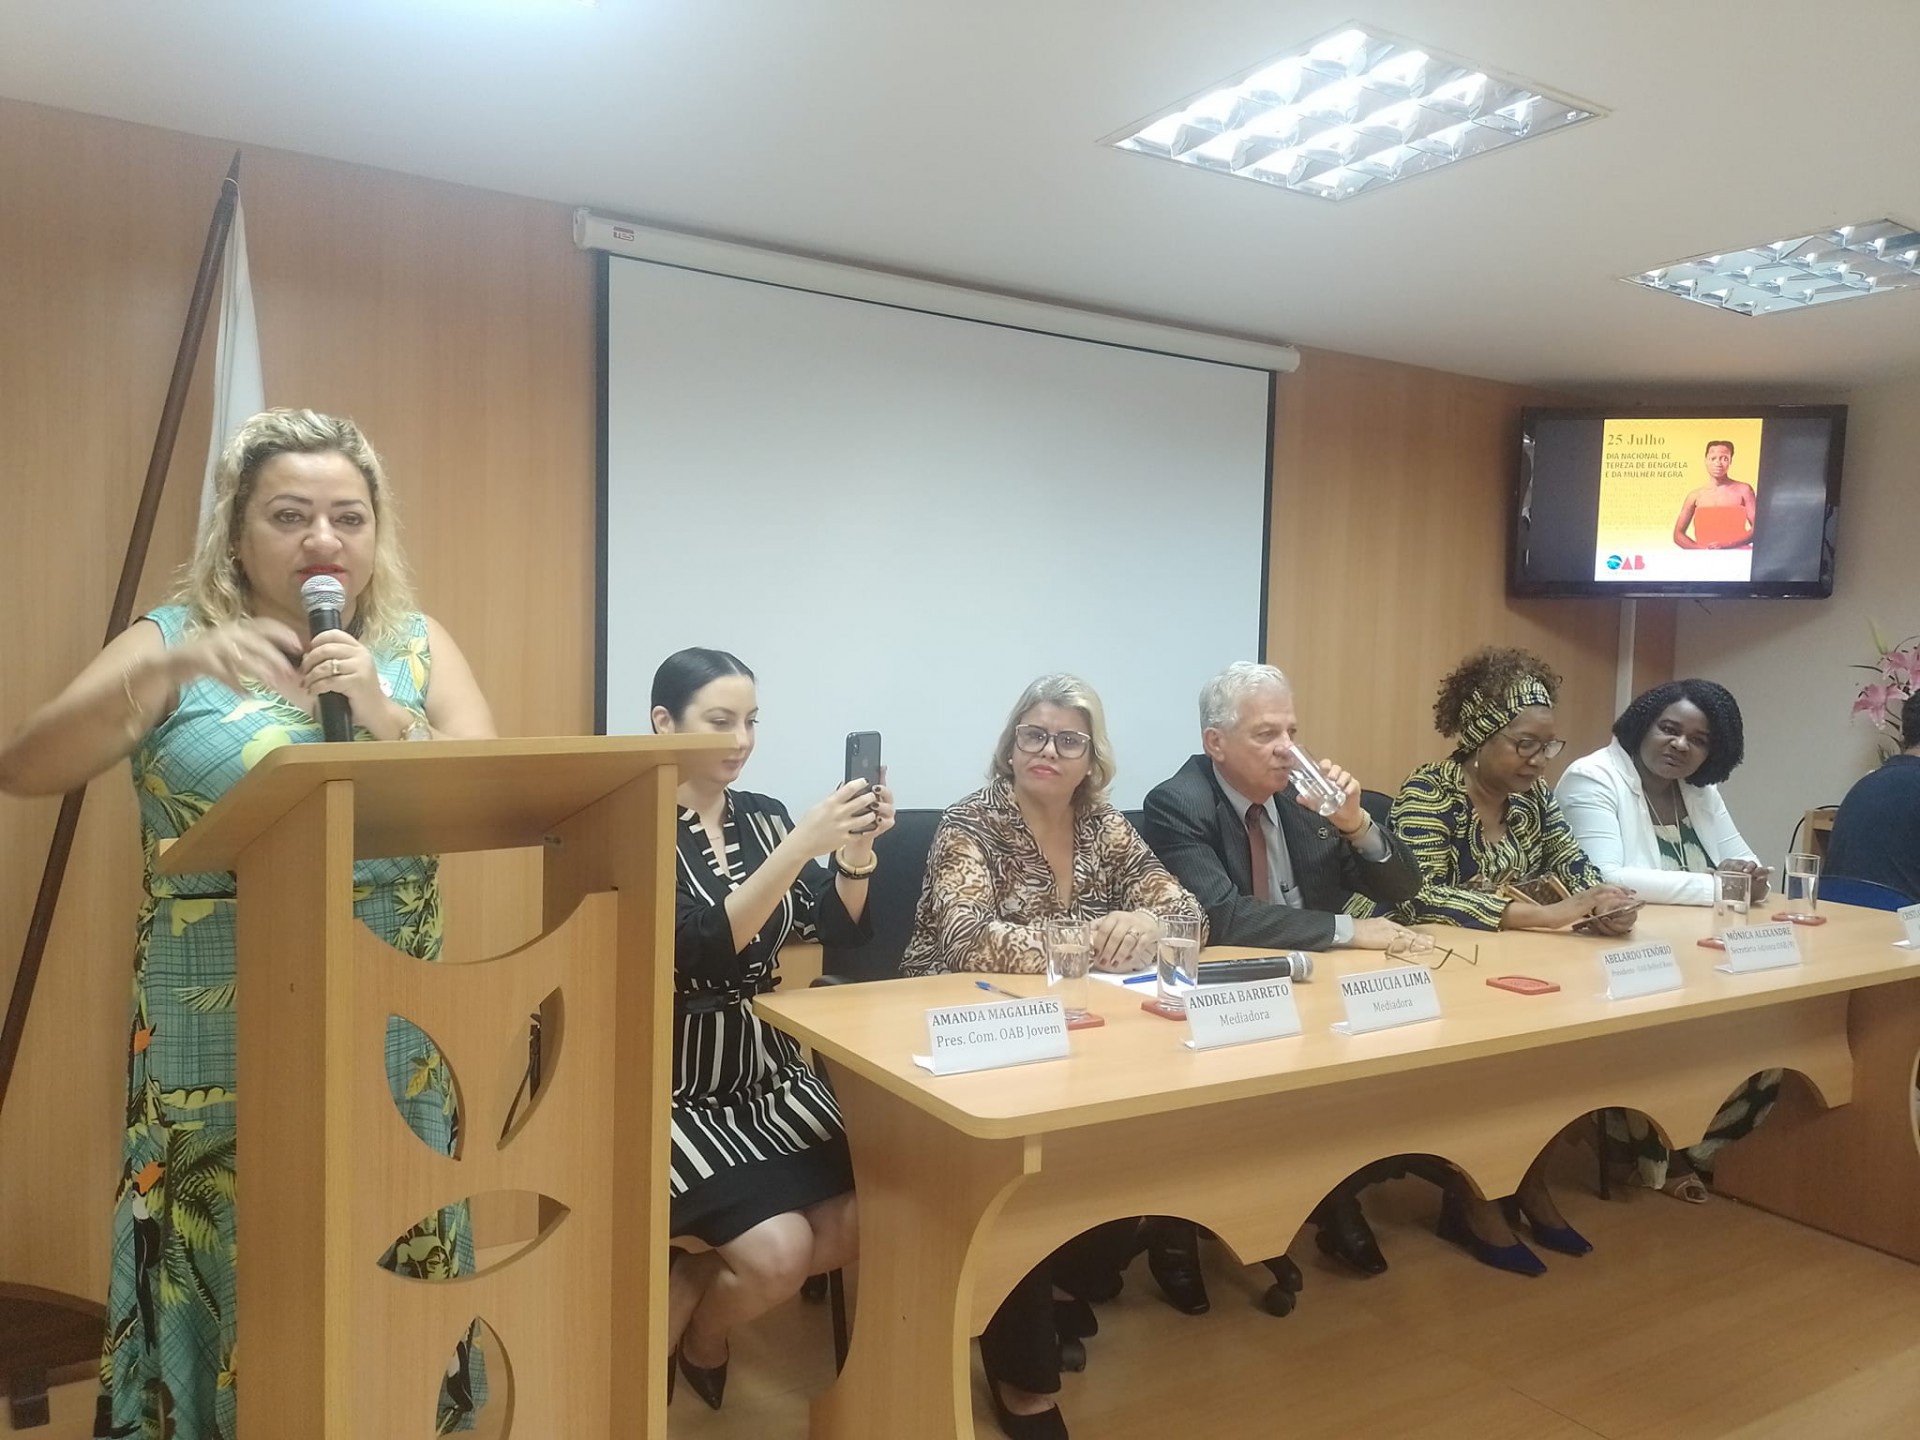 A diretoria da OAB/RJ, juntamente com a Secretaria Adjunta da OAB/RJ, marcou presença, junto com outras autoridades municipais. O Conselho Municipal dos Direitos das Mulheres foi representado pela Conselheira Eleita Leda Domingues - Divulgação